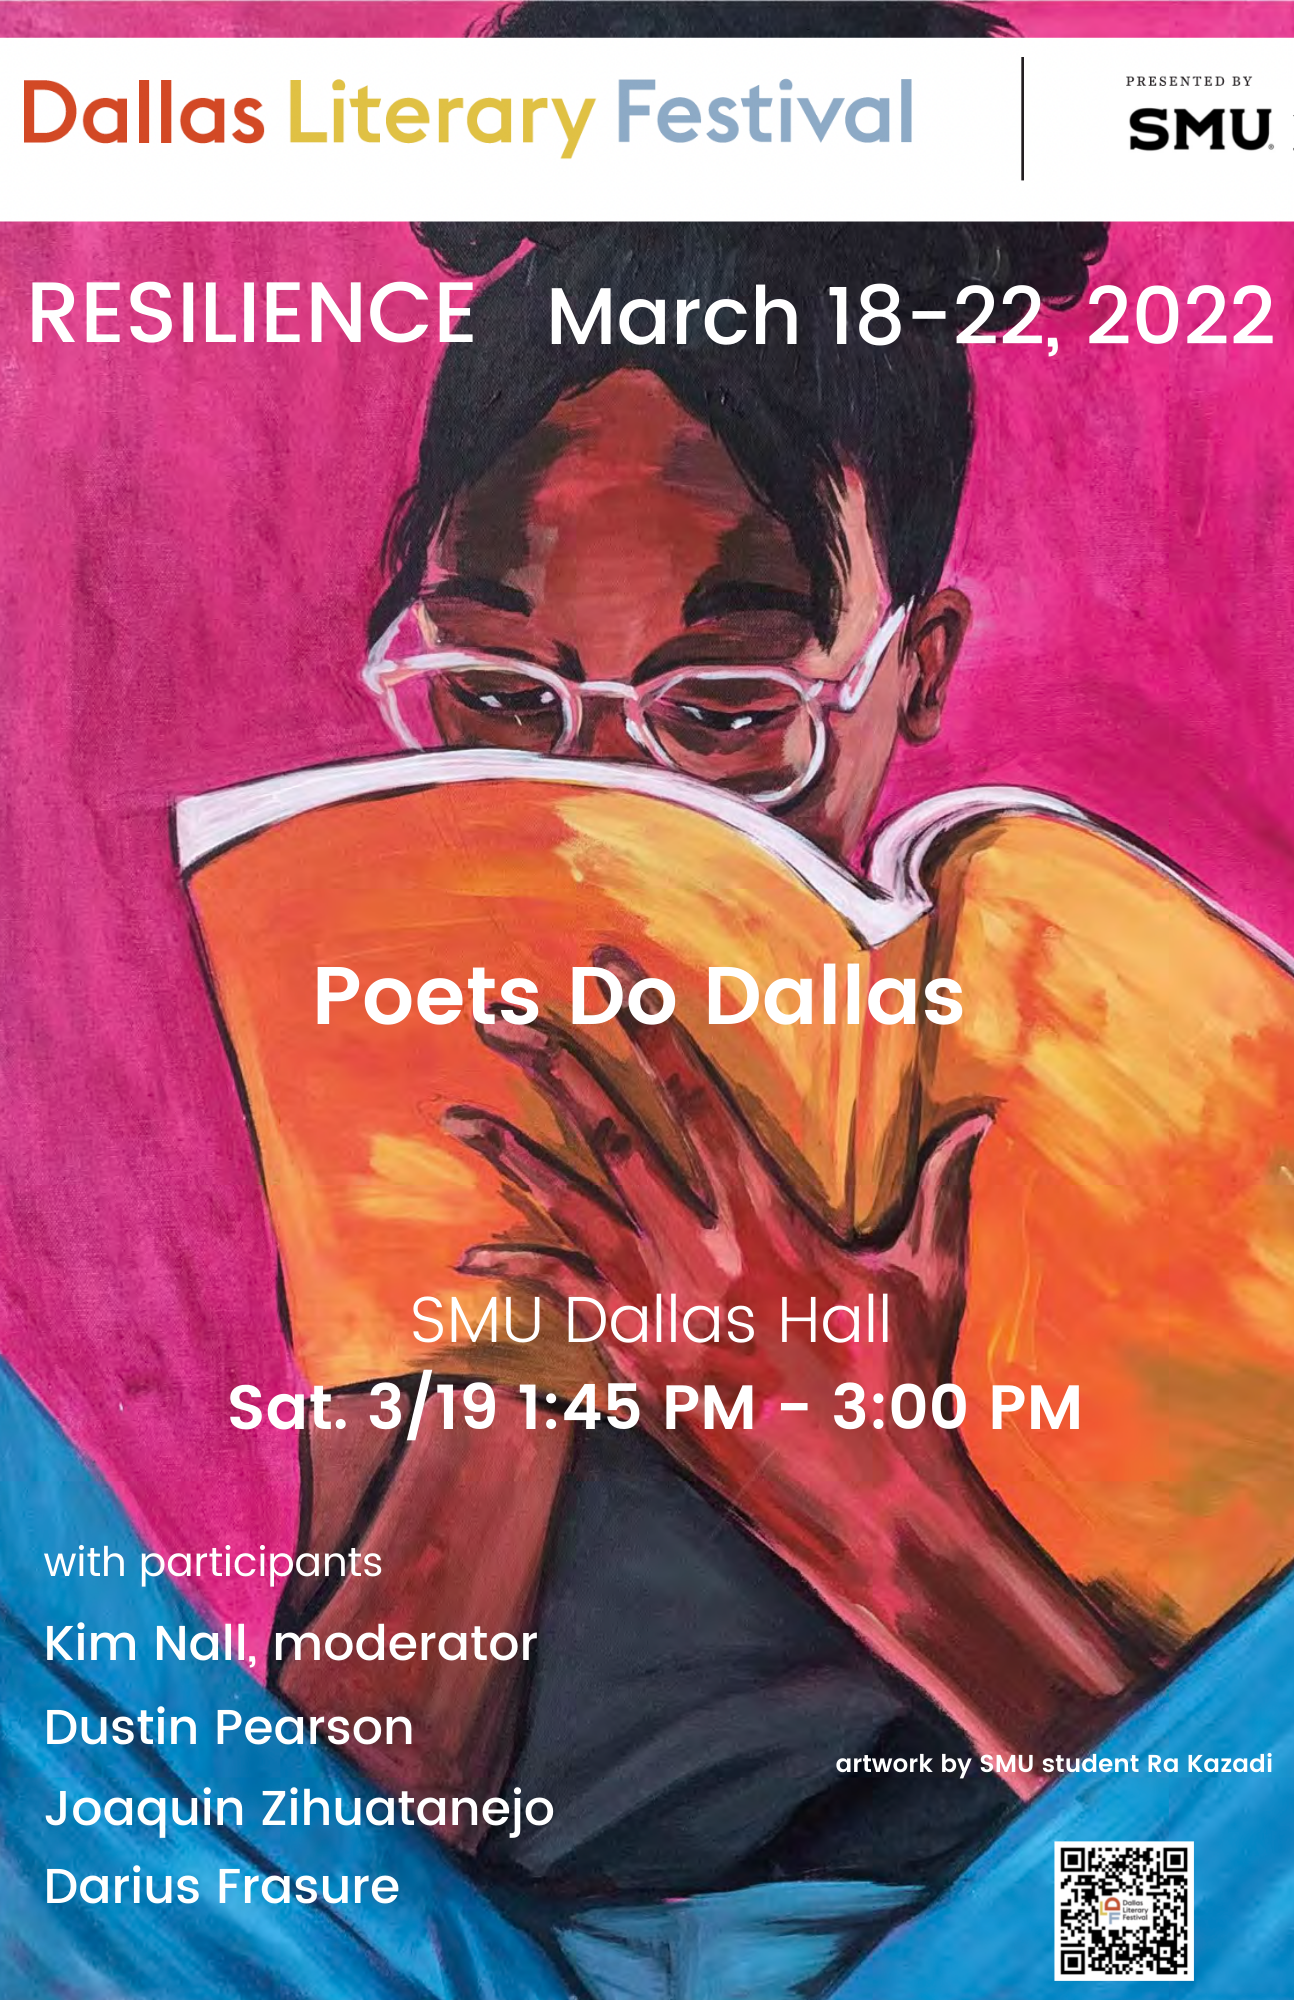 Dallas Literary Festival